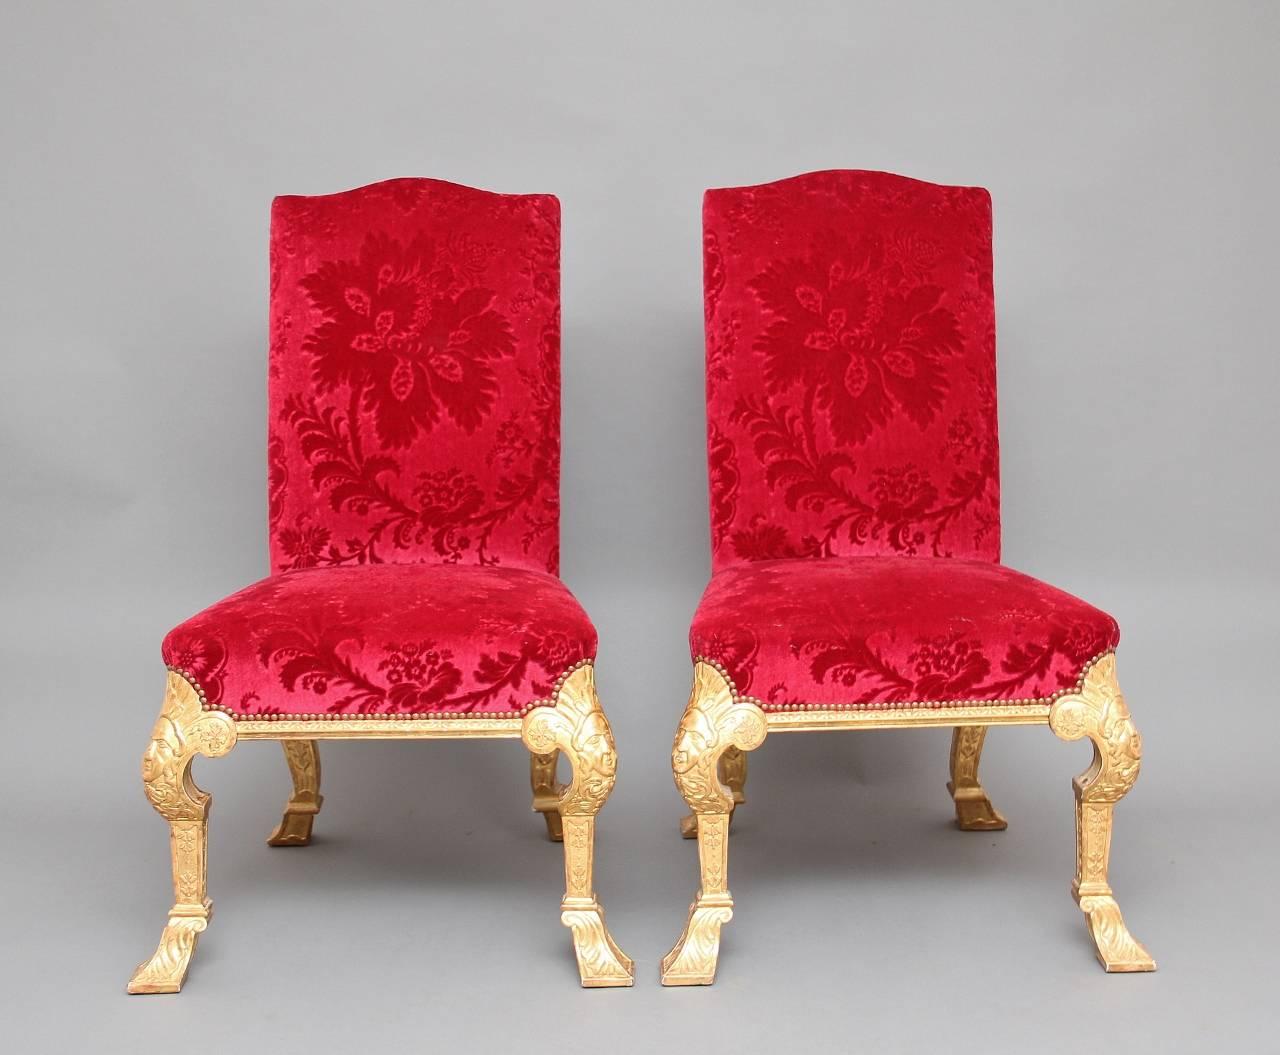 Une fabuleuse paire de chaises sculptées et dorées du début du 20ème siècle dans le style George I, les pieds cabriole avant ont des têtes de masque sculptées sur les genoux et une décoration sculptée qui descend le long des pieds, les pieds arrière